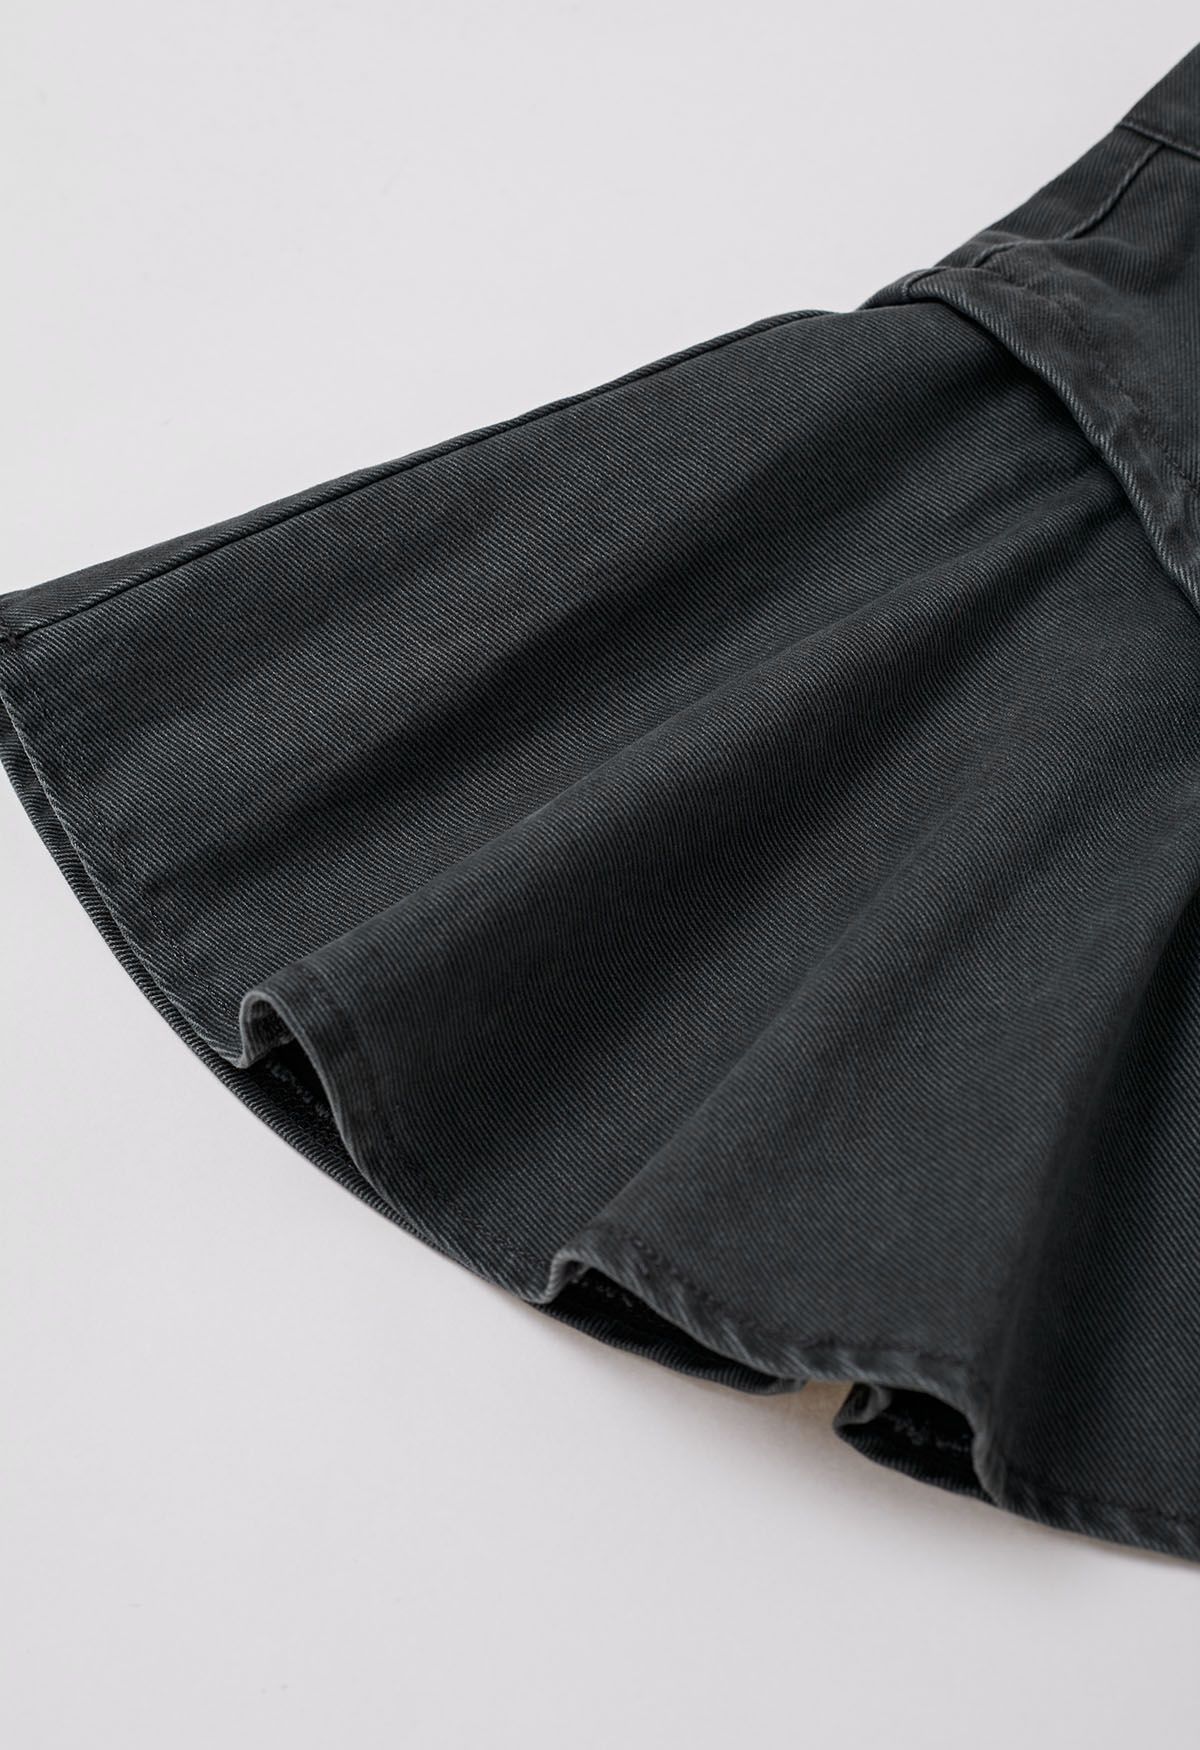 Distinctive Design Flare Denim Mini Skirt in Smoke